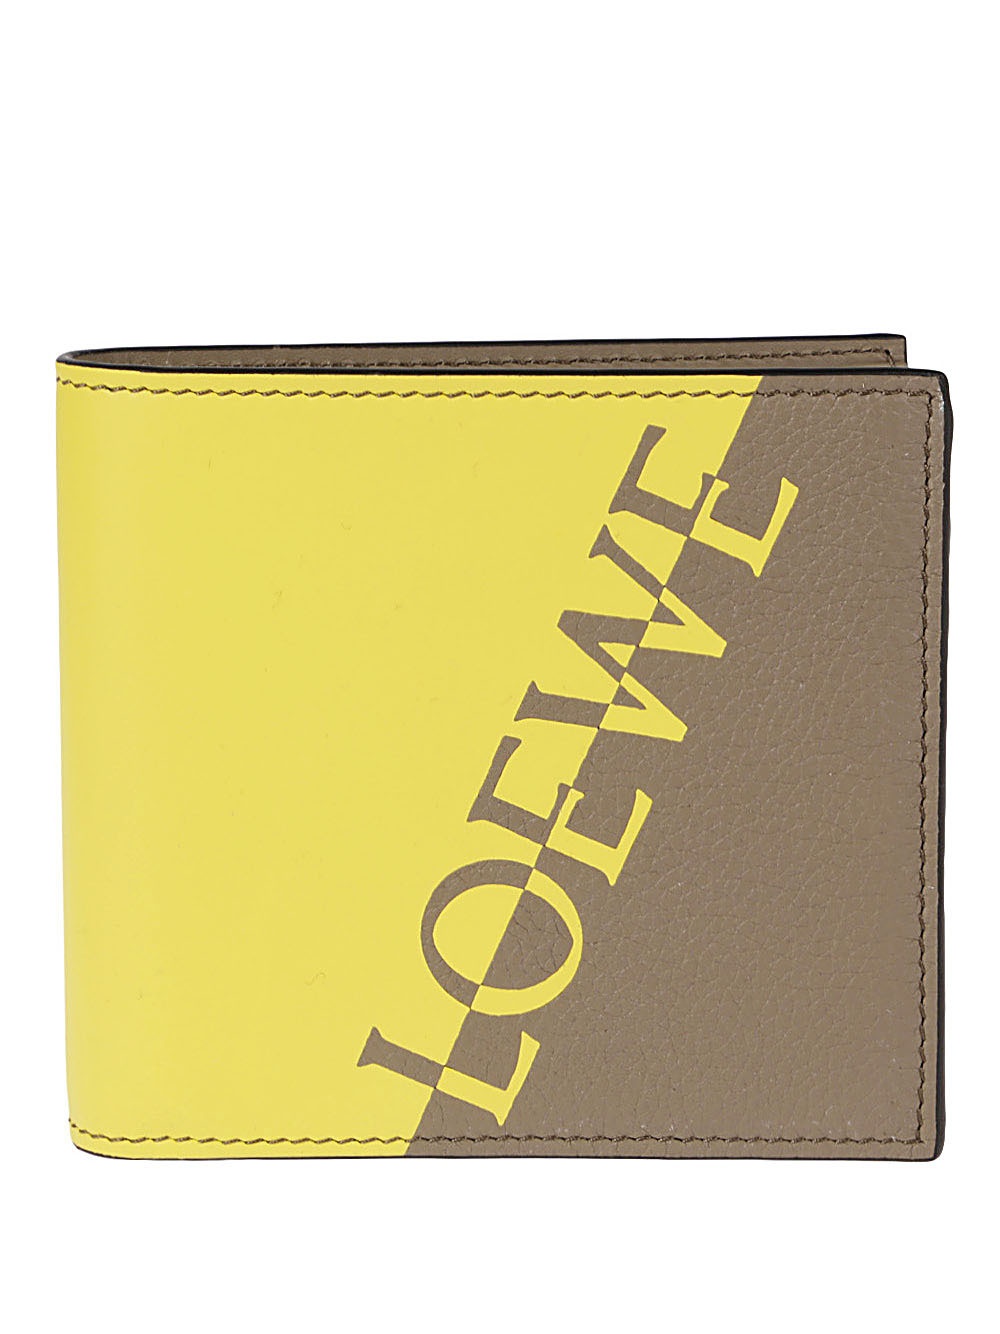 LOEWE - Wallet With Logo Loewe